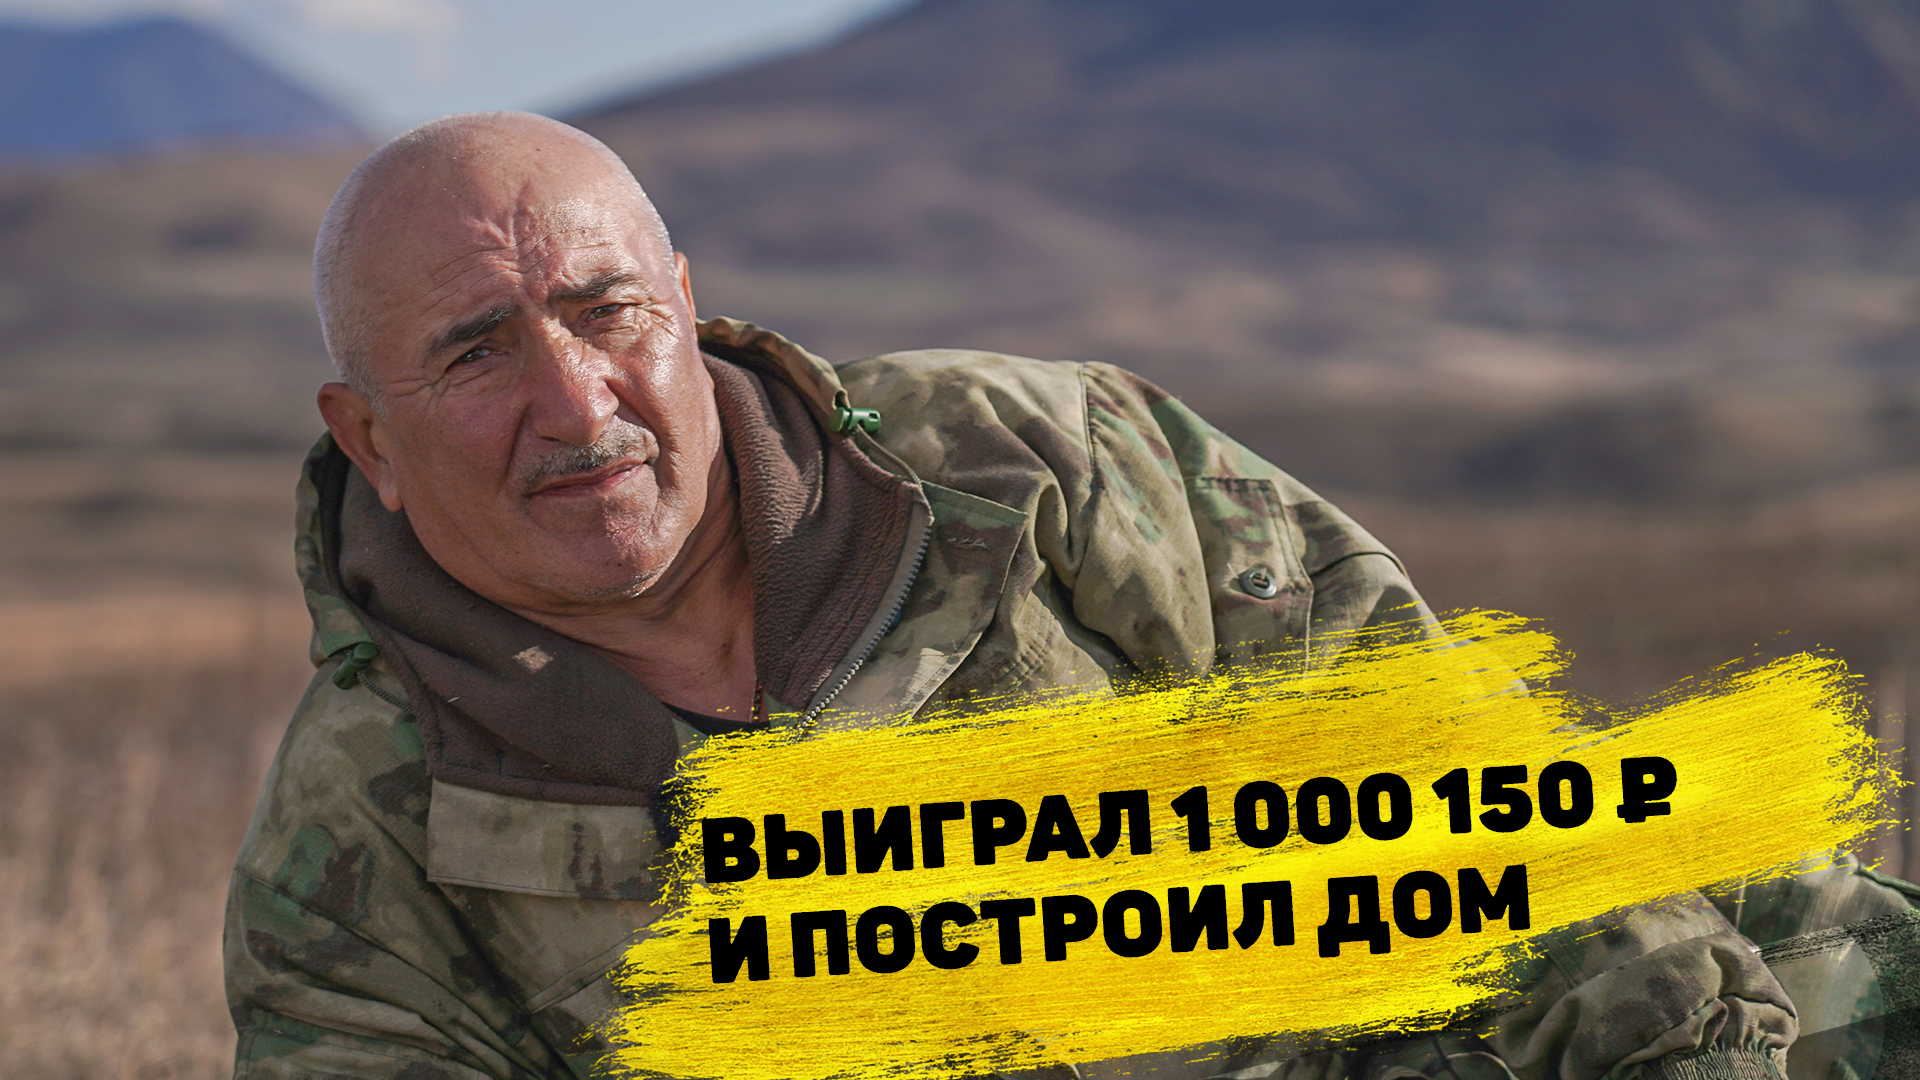 Николай Горюшкин выиграл 1 000 150 ₽ в «Русском лото»